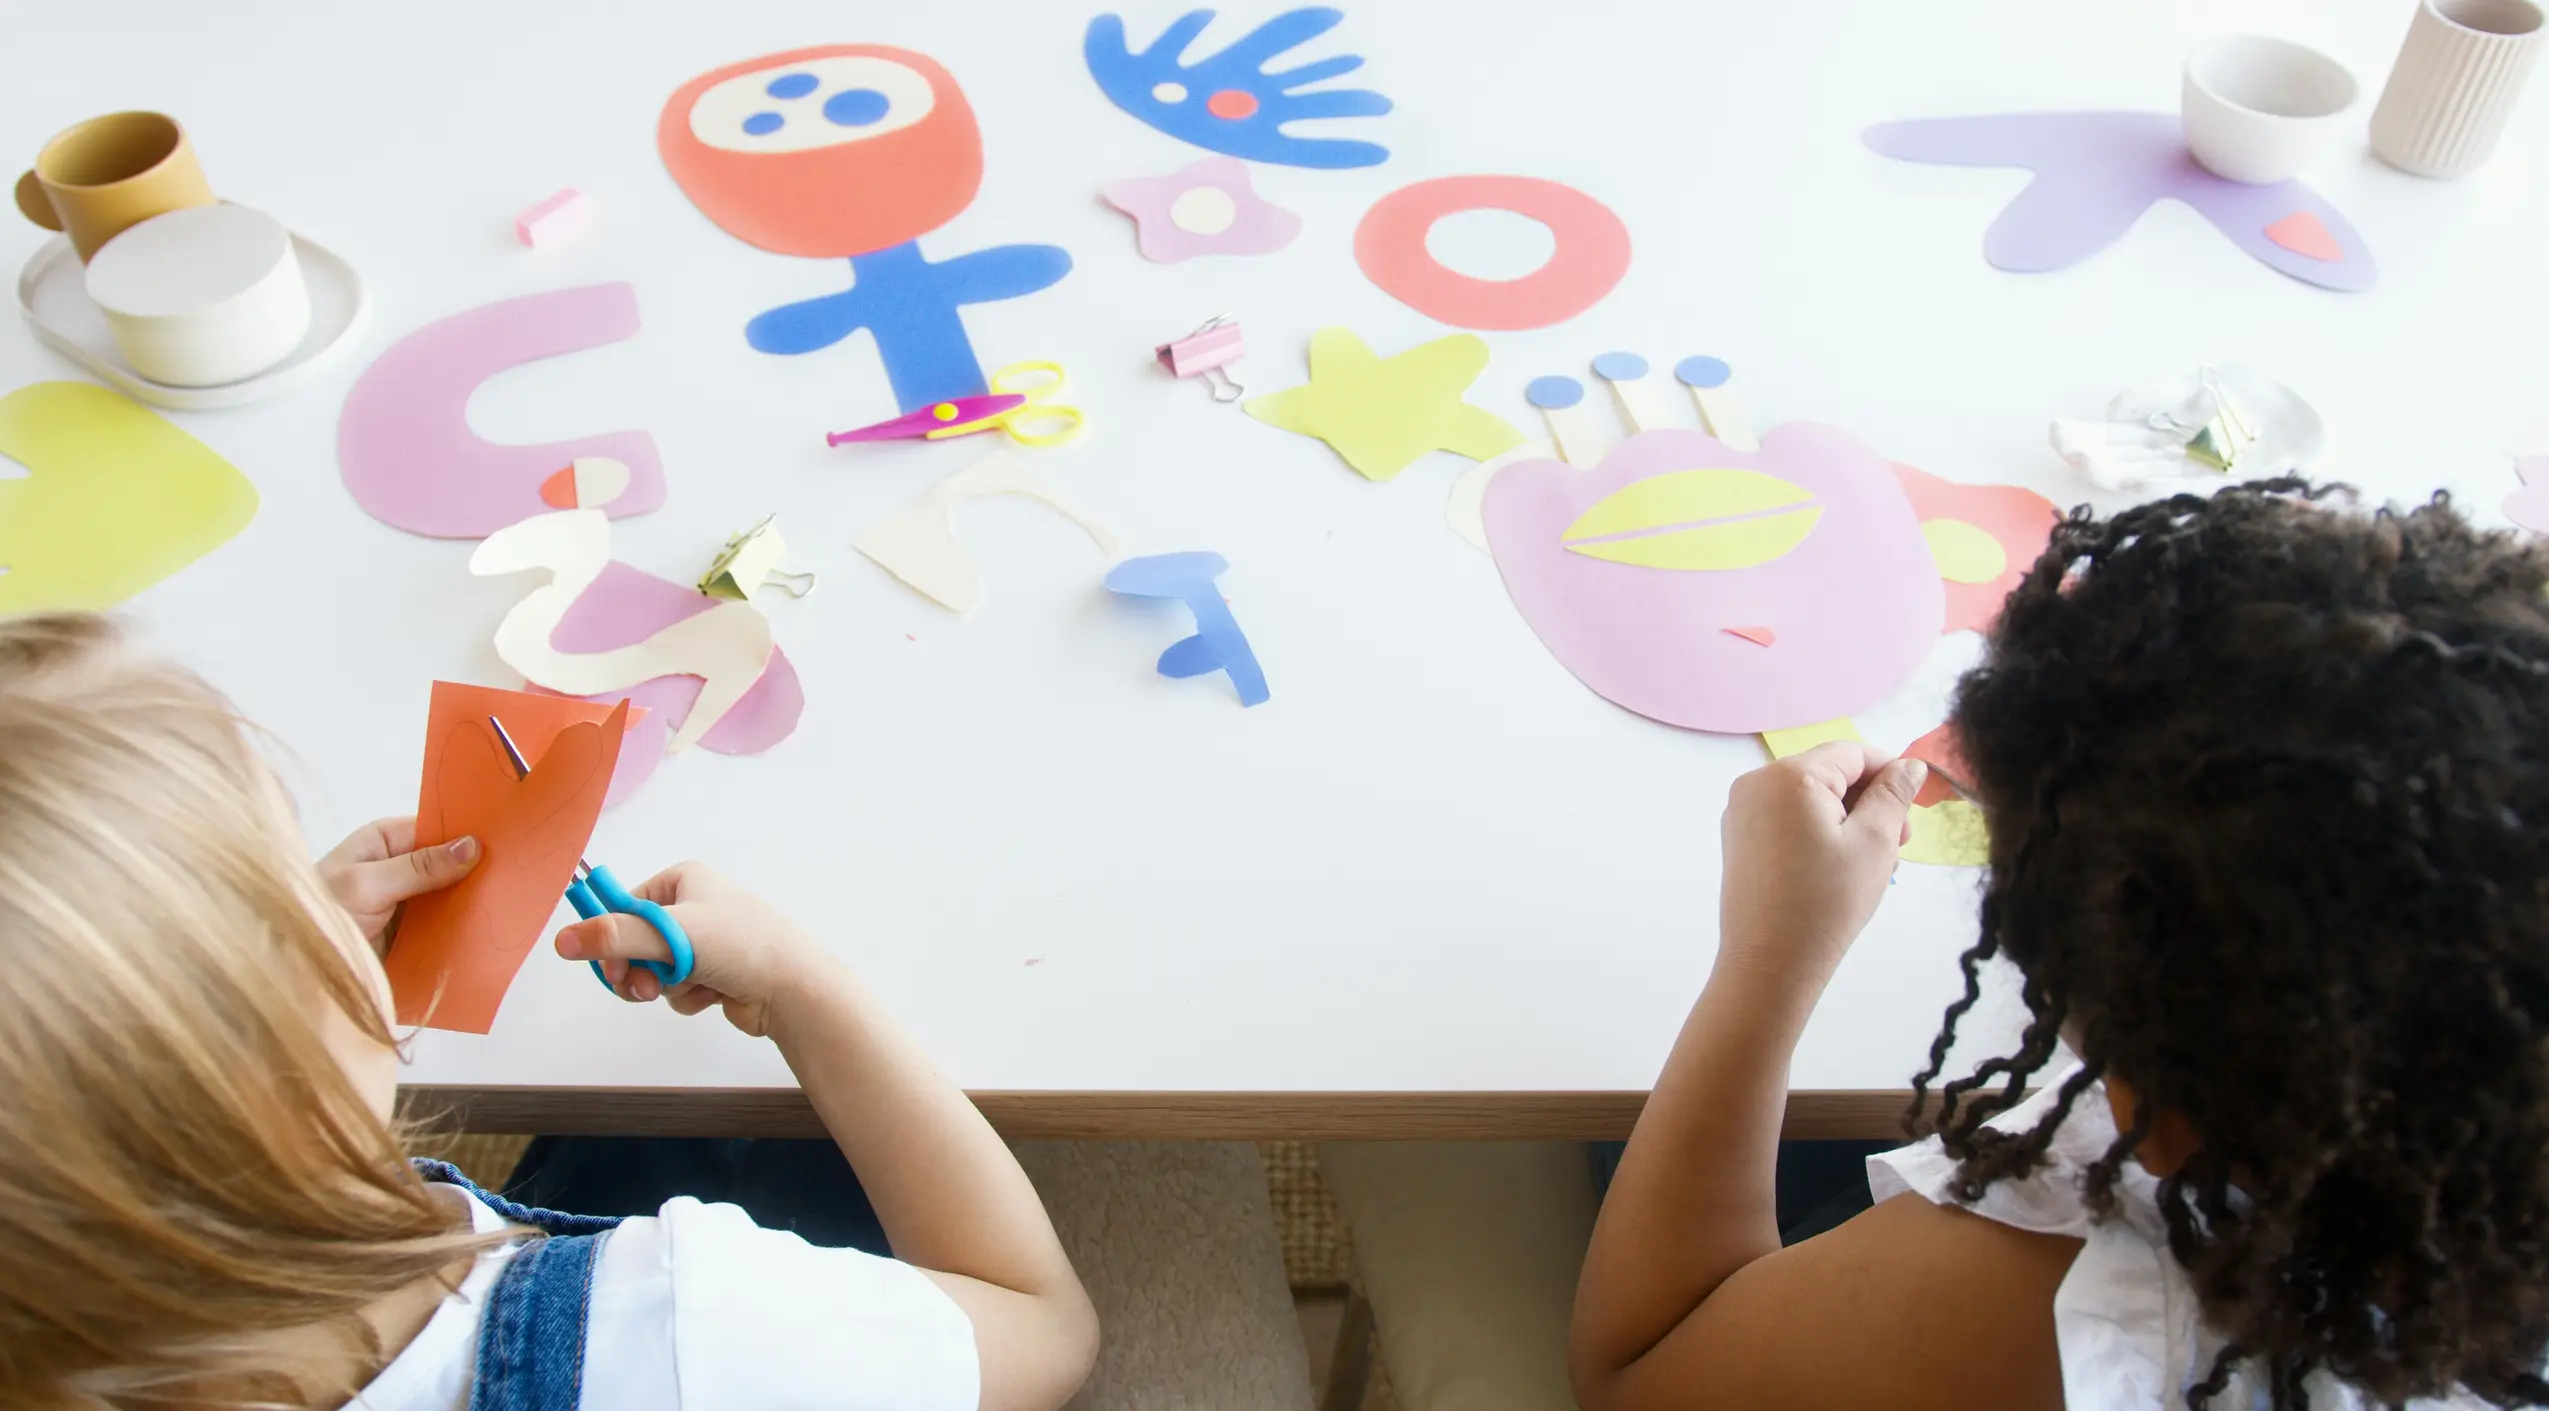 Kinder vertieft in kreative Bastelprojekte, umgeben von buntem Papier und Glitzer, erschaffen mit Freude und Stolz einzigartige Erinnerungsstücke an einen magischen Geburtstag.